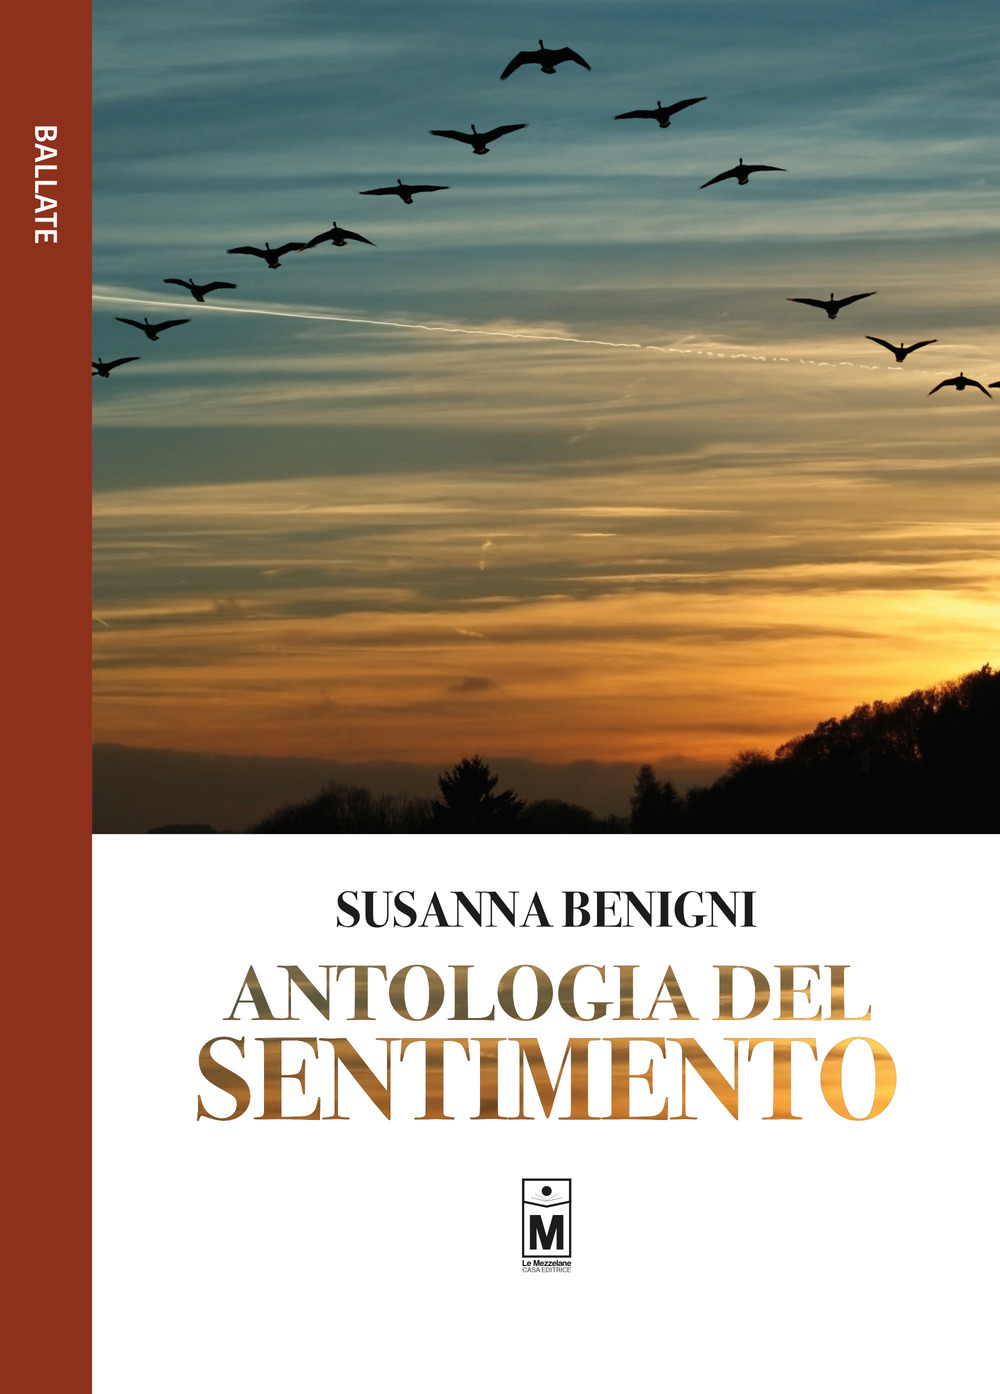 Image of Antologia del sentimento